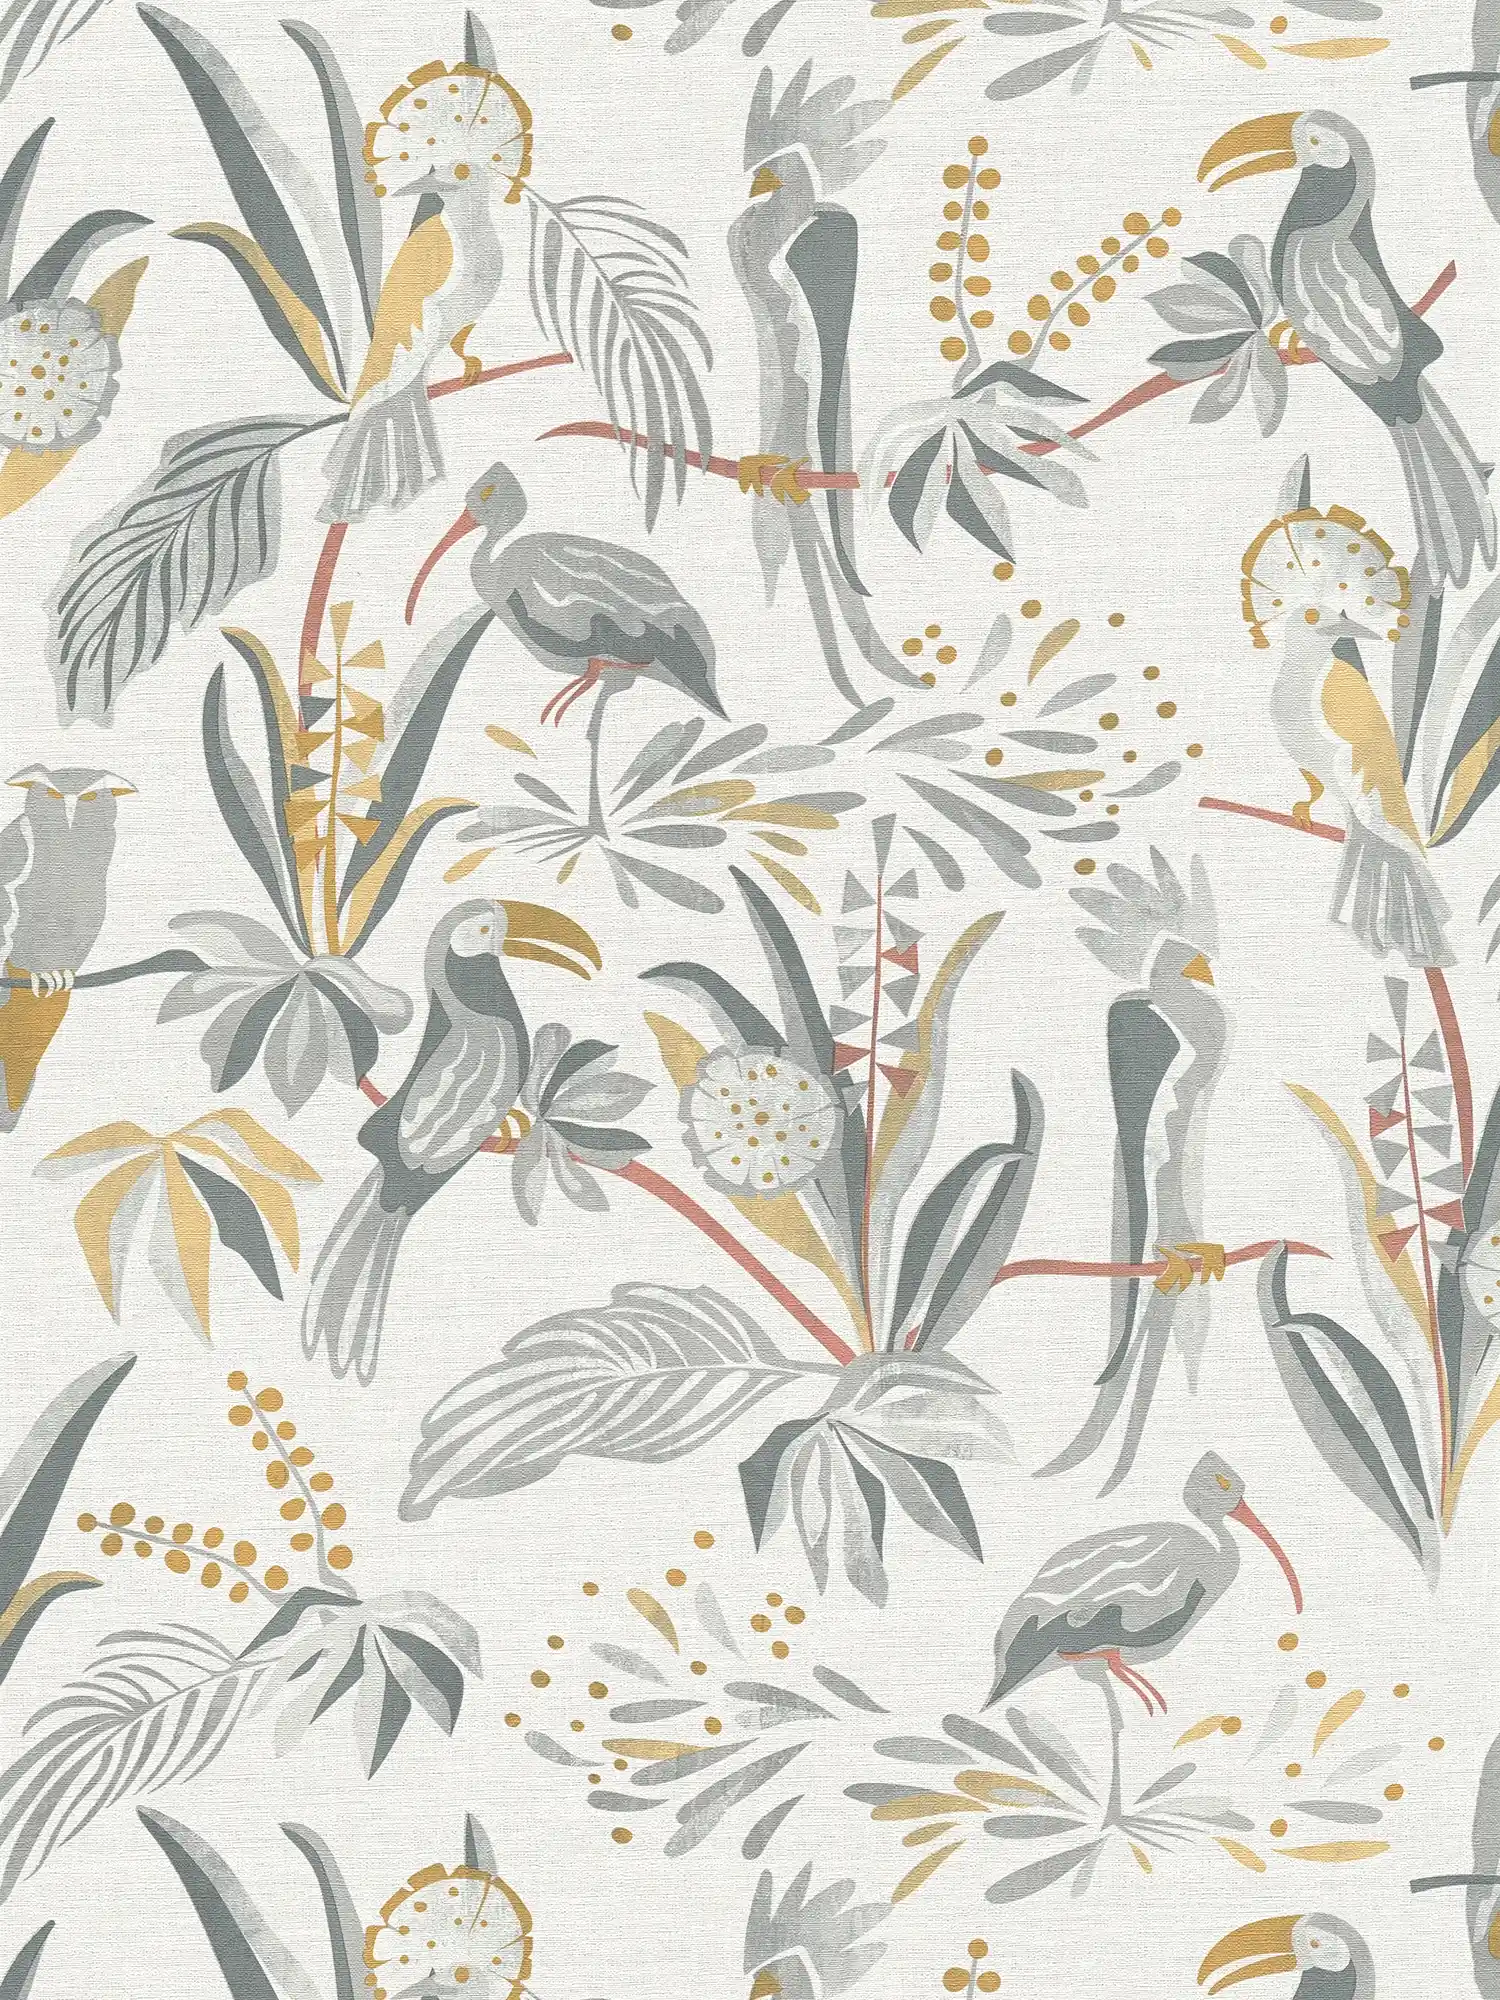 Papier peint jungle avec feuilles de palmier & oiseaux aspect lin - gris, or
